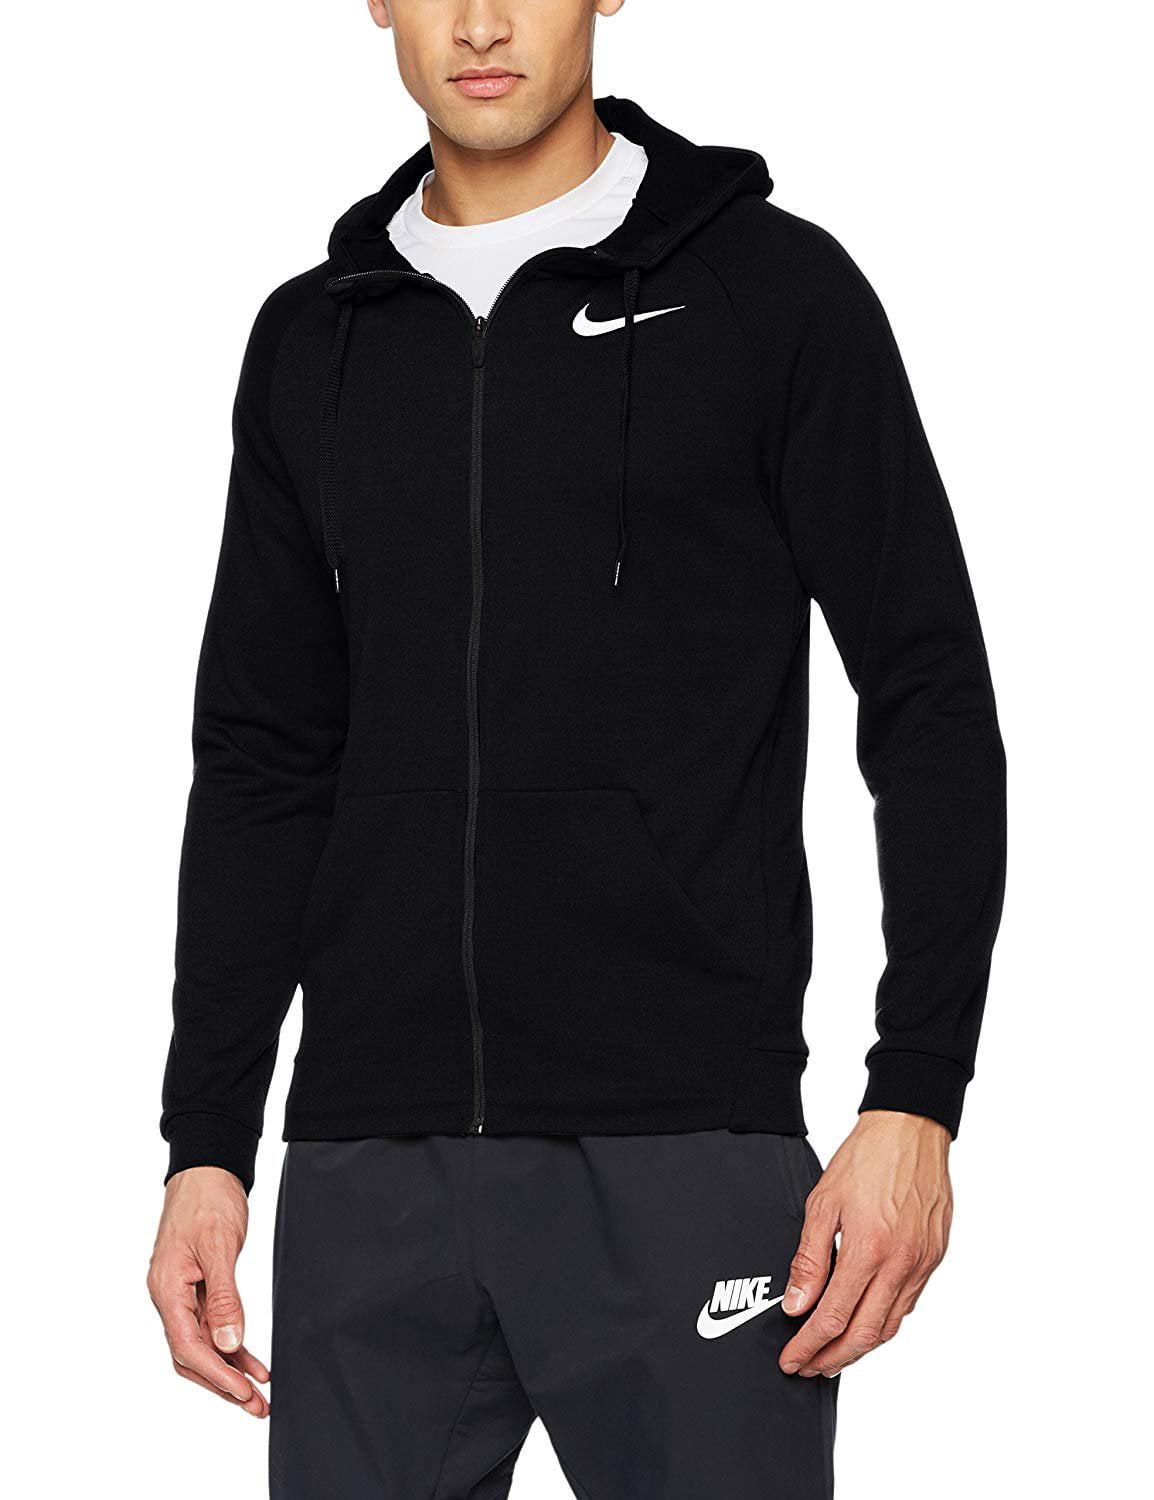 Nike - nike lightweight full-zip fleece hoodie - men's - Walmart.com ...